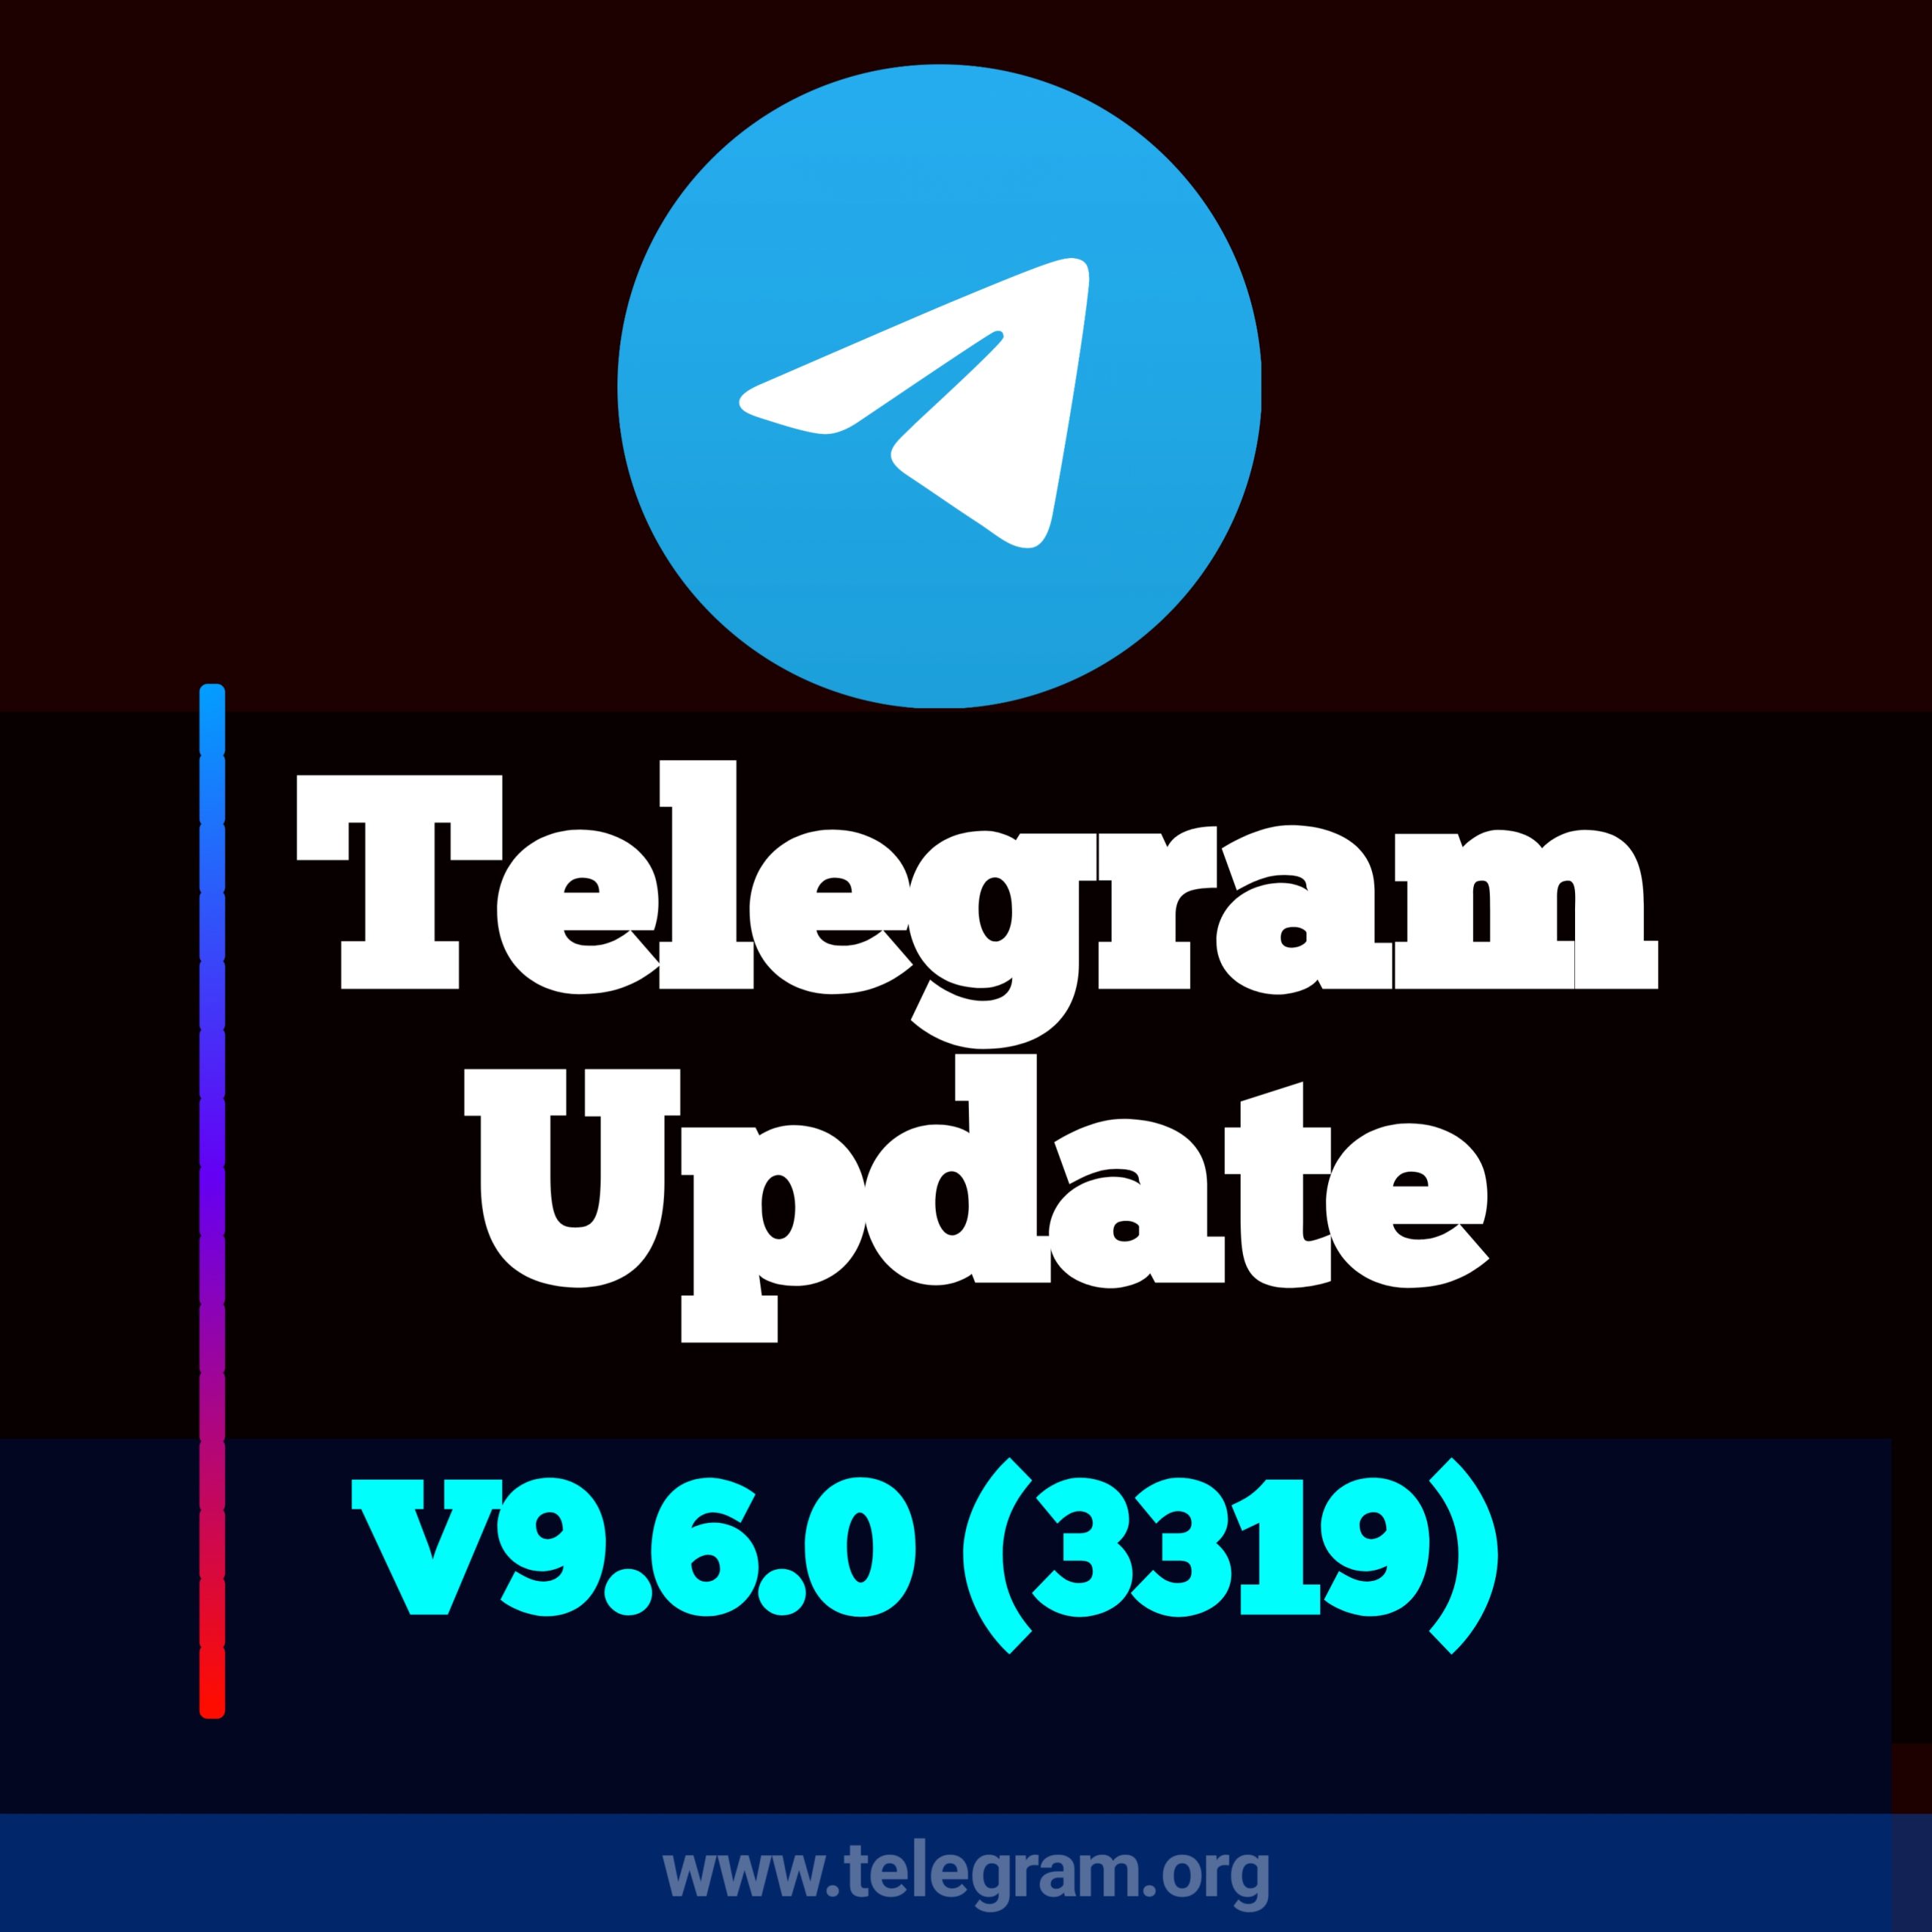 挑选合适的telegram账号购买平台，了解更多信息